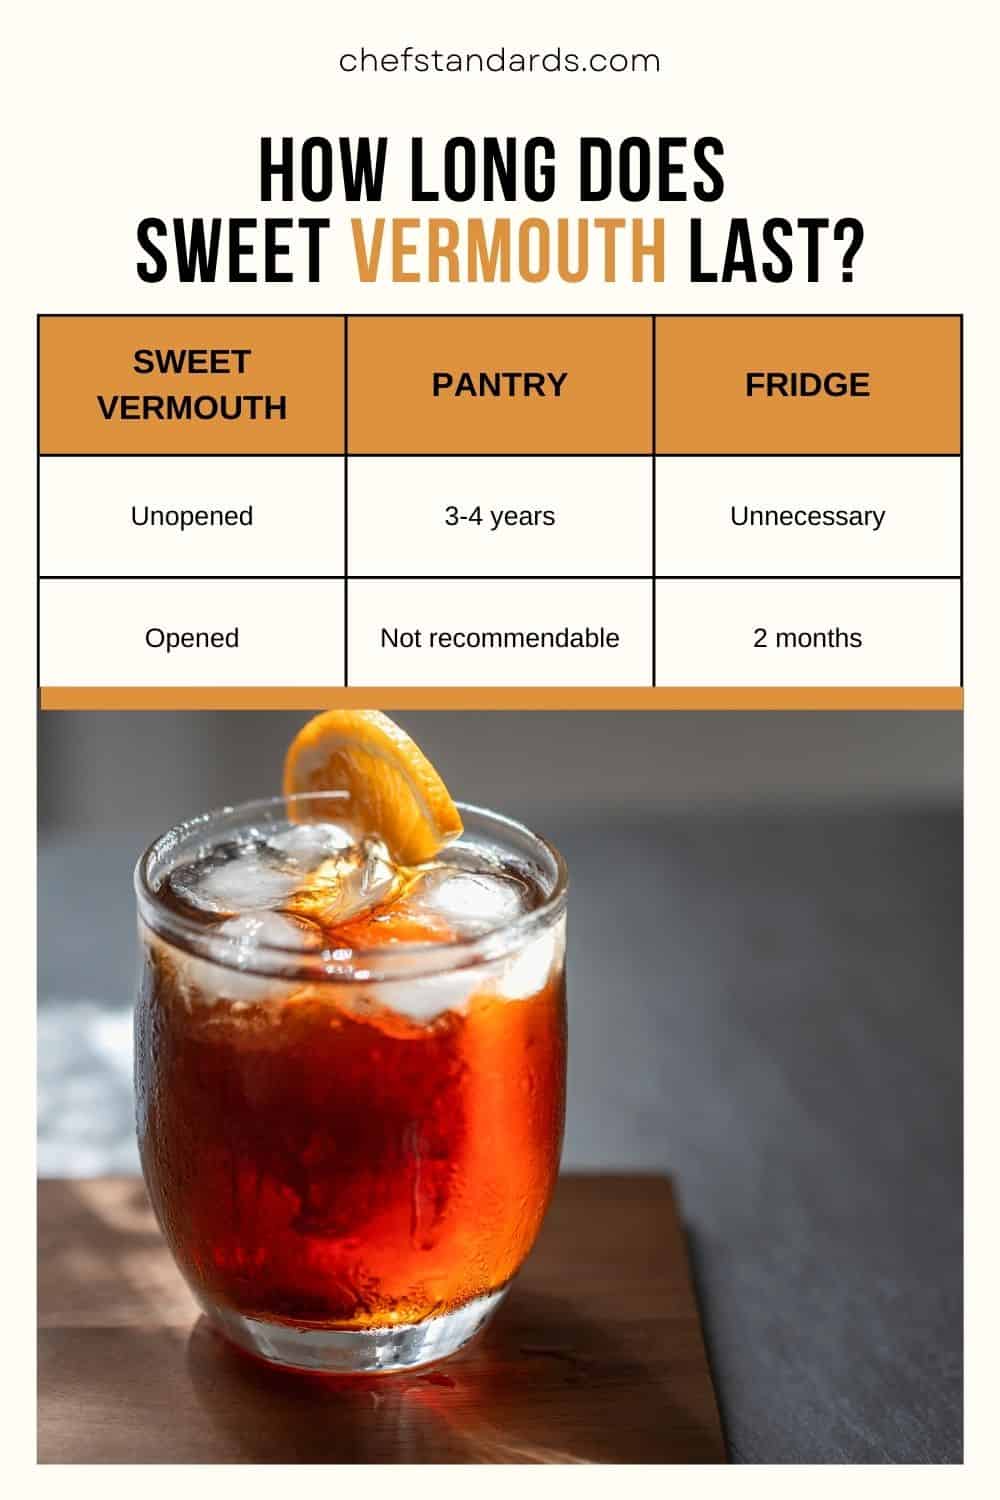 Quelle est la durée de vie du vermouth doux ?